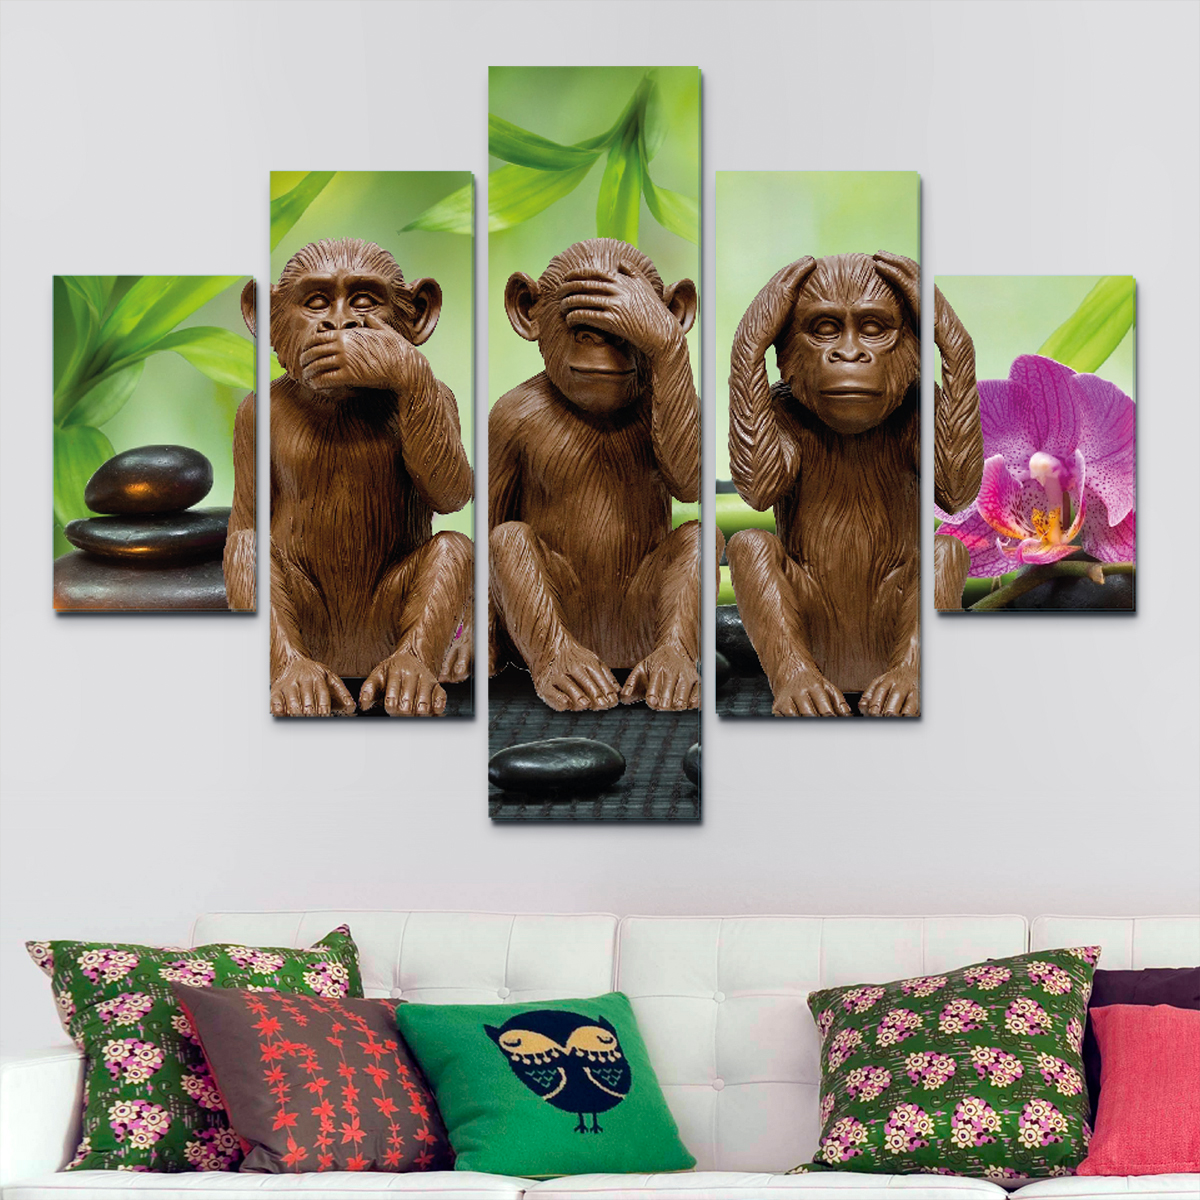 Monos de la Sabiduría (110 cm 70 cm) – Cuadros Decorativos